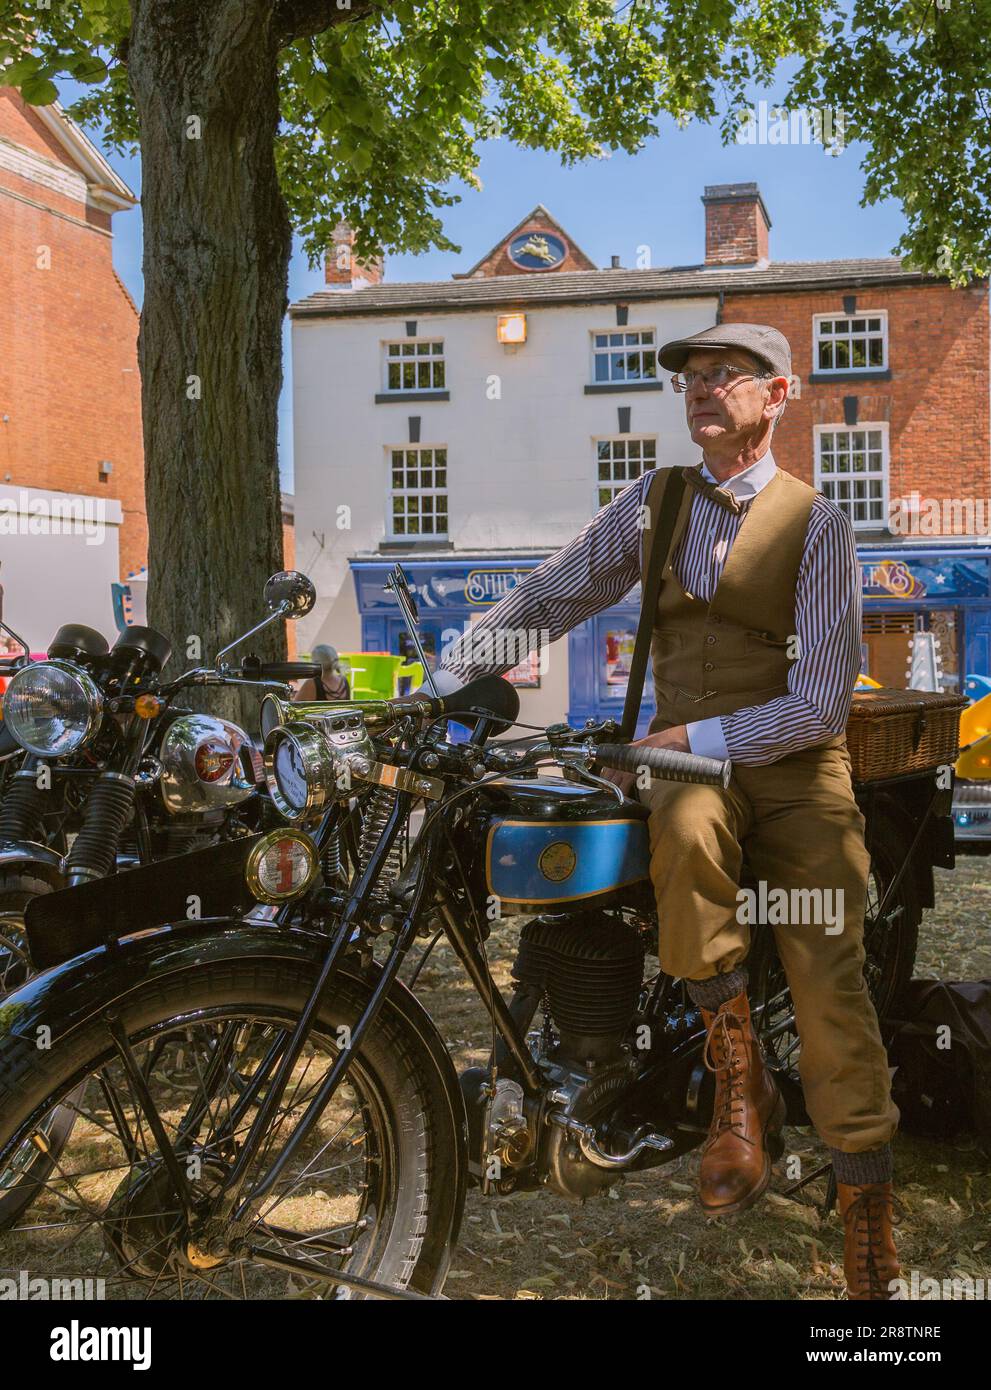 Un ritratto dell'orgoglioso proprietario di una motocicletta Triumph Model NSD in piedi accanto alla sua motocicletta mentre indossa un costume d'epoca. Moto d'epoca. Foto Stock